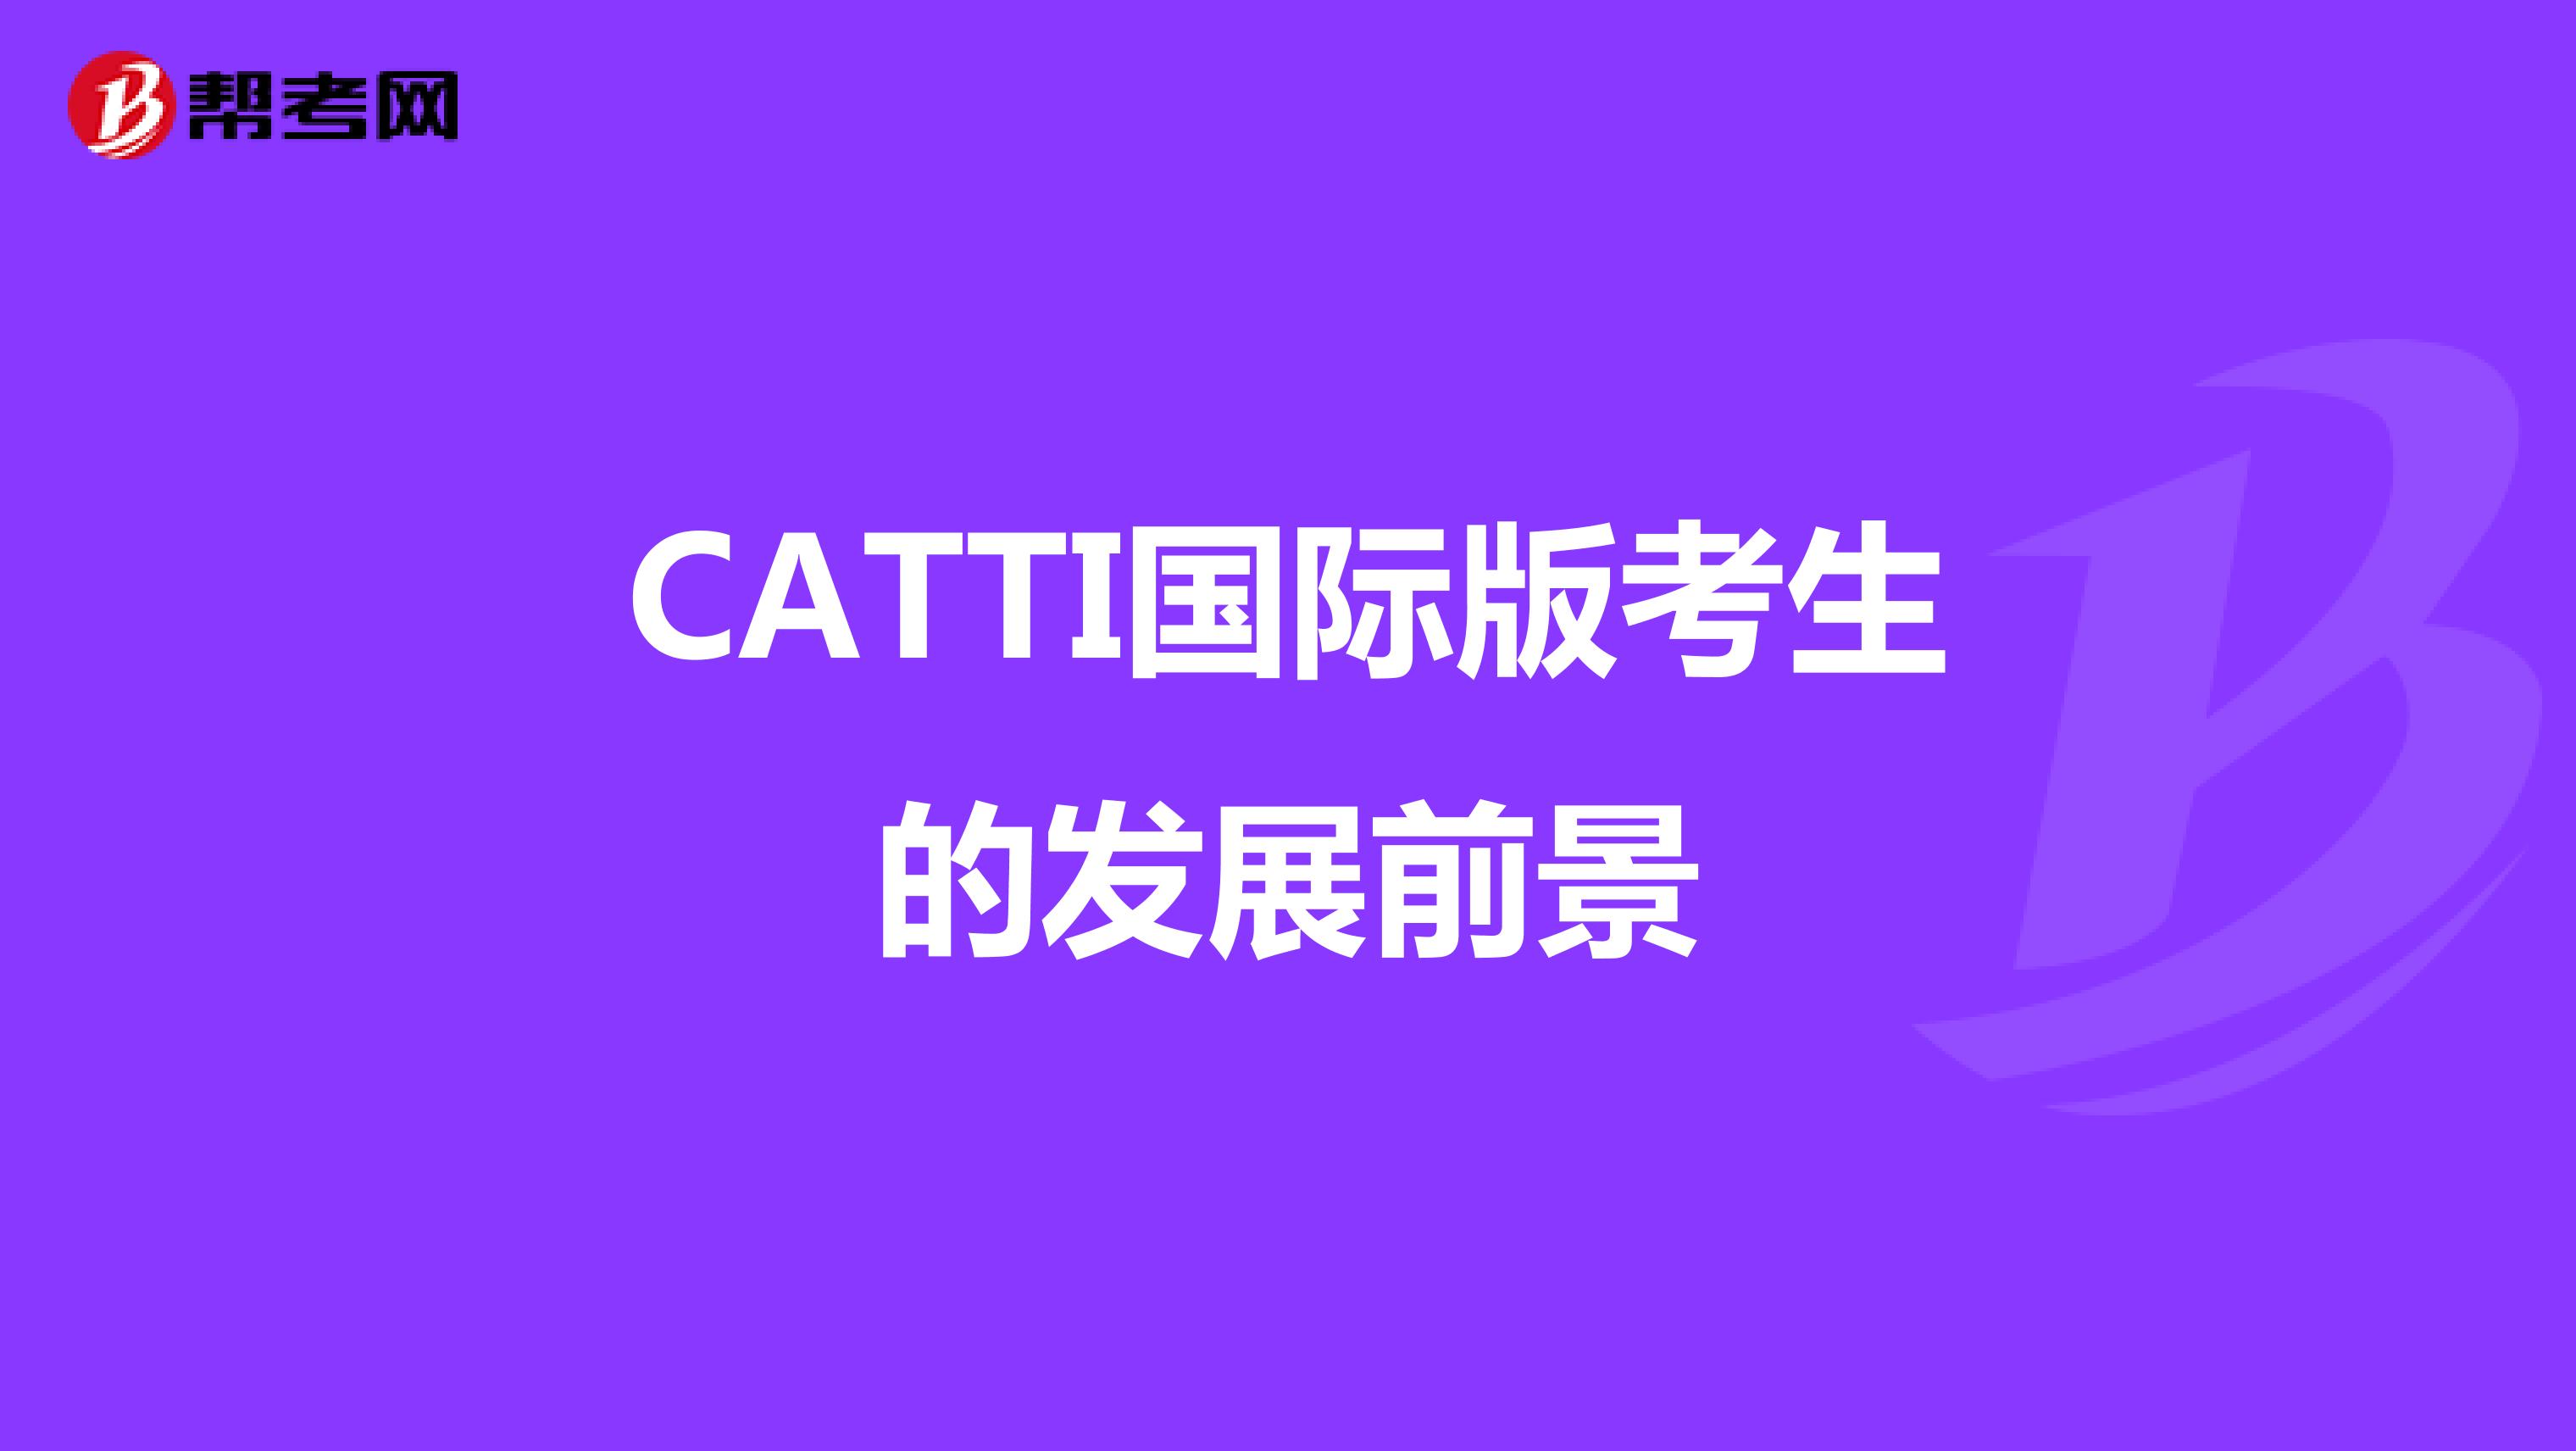 CATTI国际版考生的发展前景